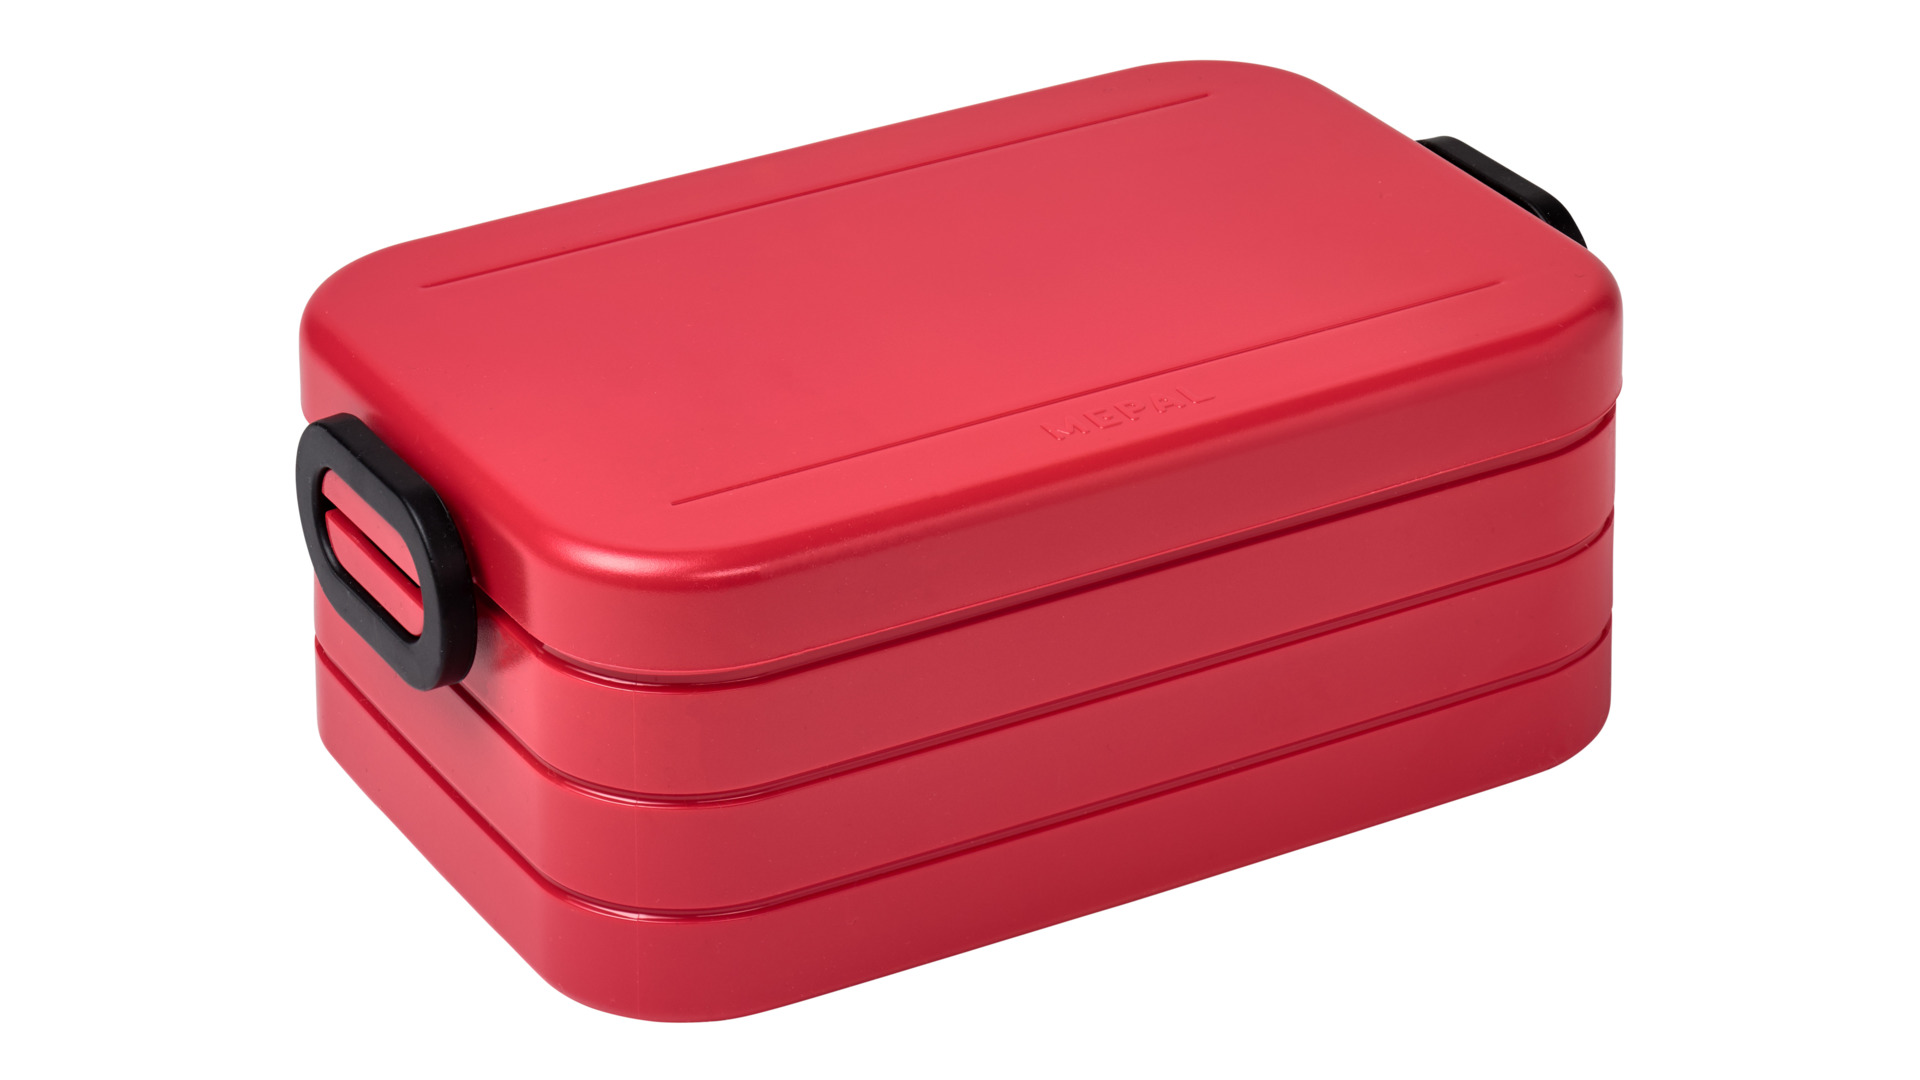 Ланч-бокс со съемными контейнерами Mepal 900мл (красный)